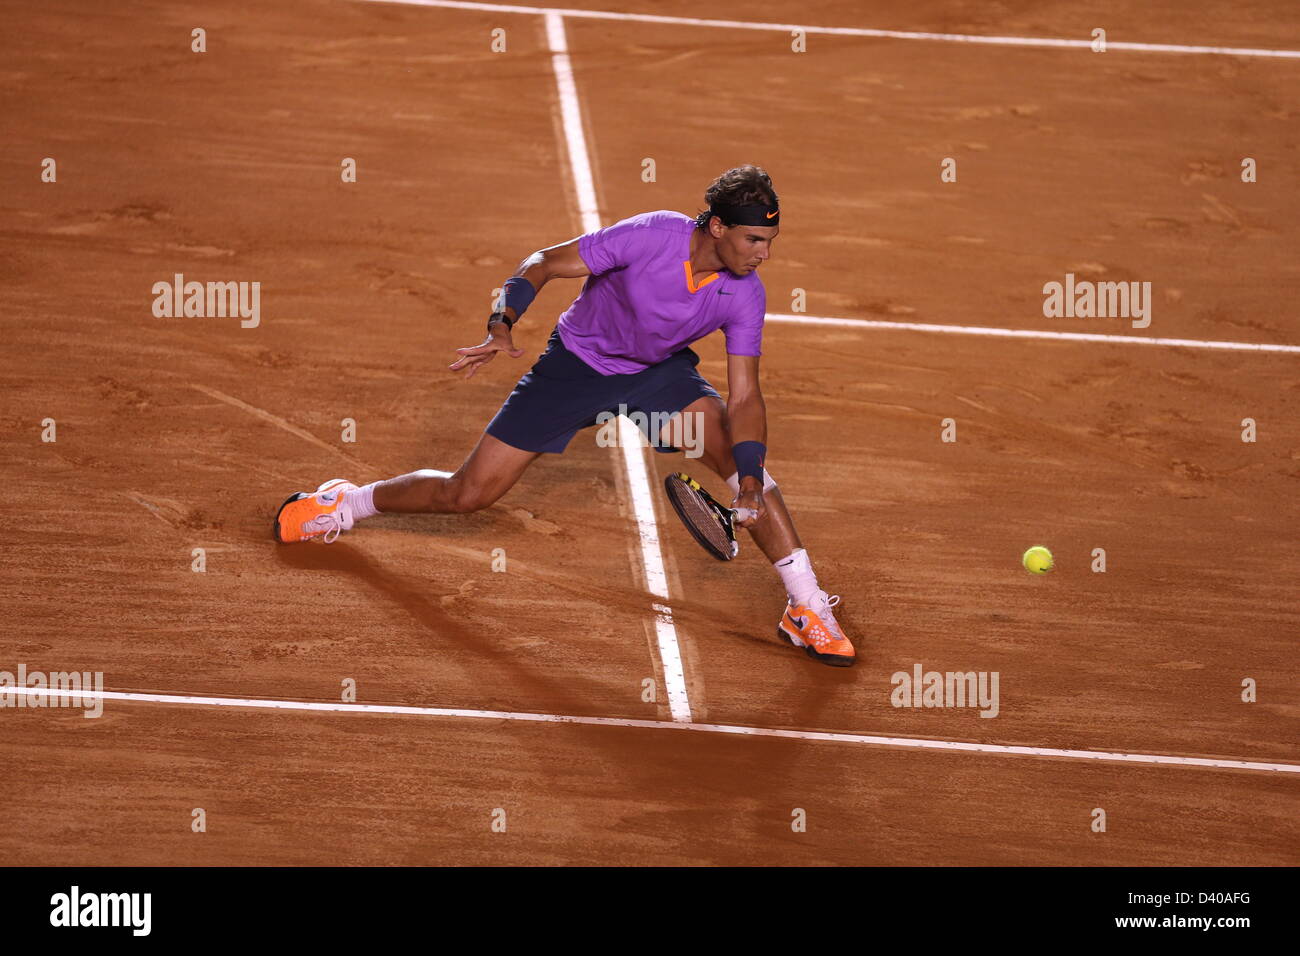 Acapulco, México. El 27 de febrero de 2013. Rafael Nadal de España corre por un balón durante el Abierto de Tenis de México 2013, en Acapulco, México Crédito: Mauricio Paiz / Alamy Live News Foto de stock